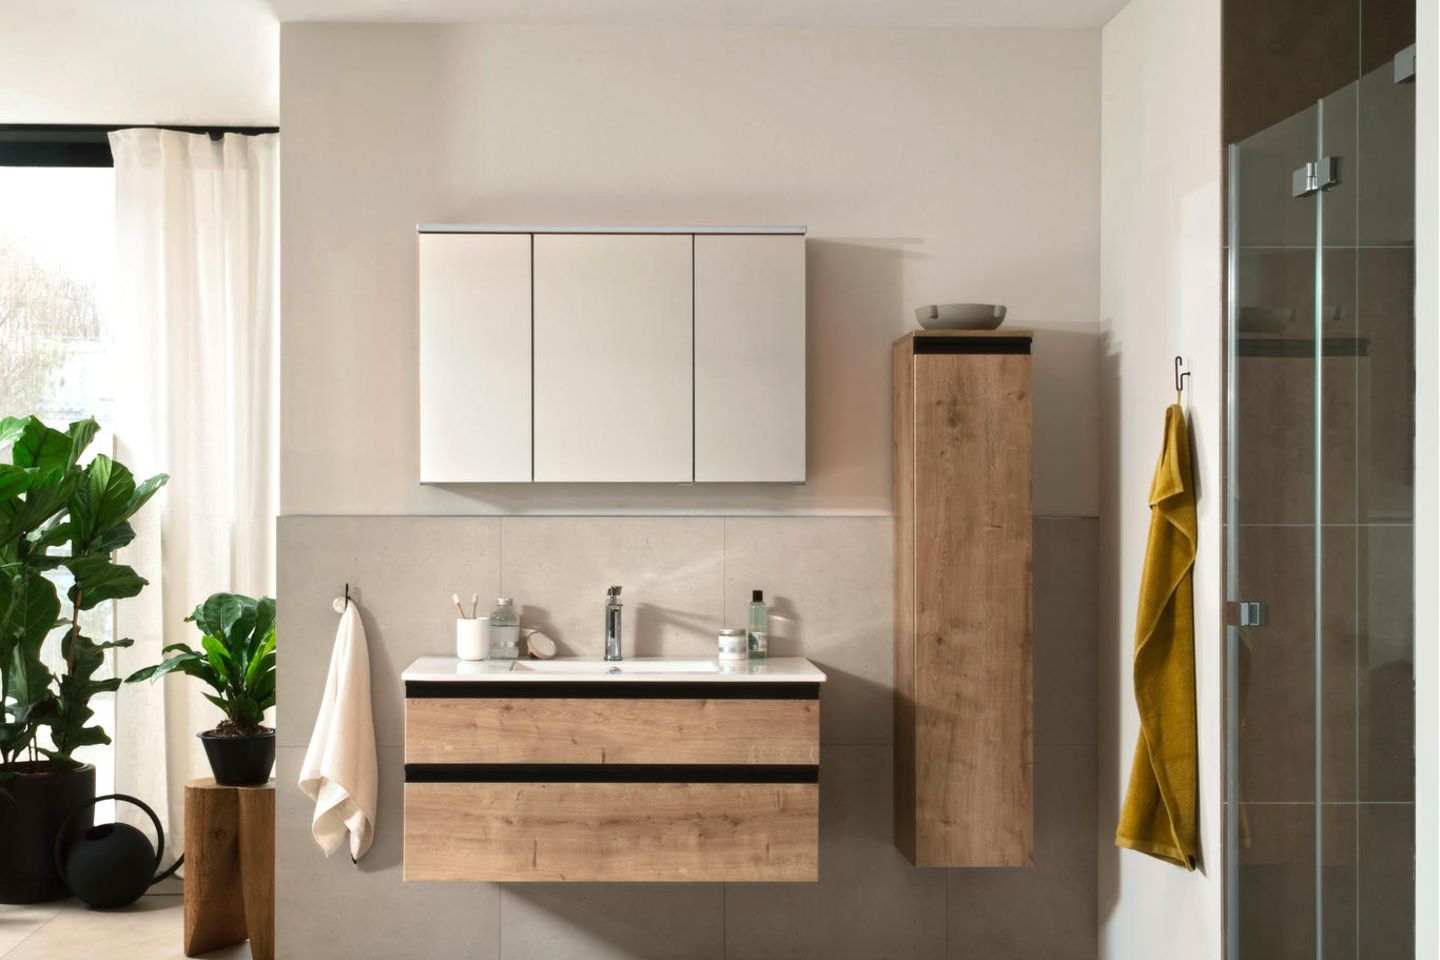 Badezimmer mit Möbel in Holzoptik, einem Waschtisch, Hängeschrank, Dusche und verschiedenen Grünpflanzen.